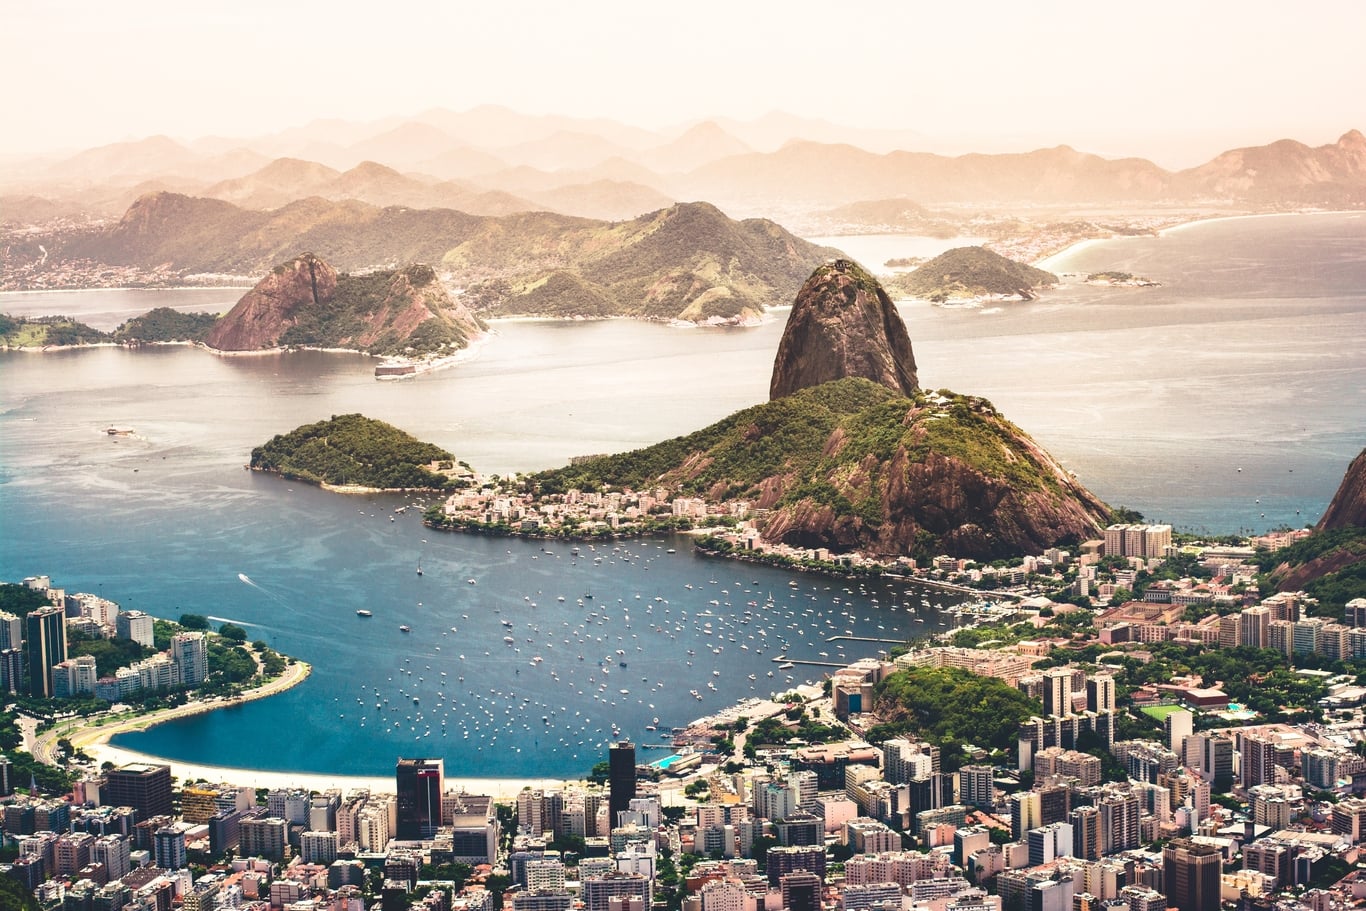 Vzhůru do Brazílie. ESL CS:GO Major v Rio de Janeiro potvrzen. Dočkáme se největší akce v historie?